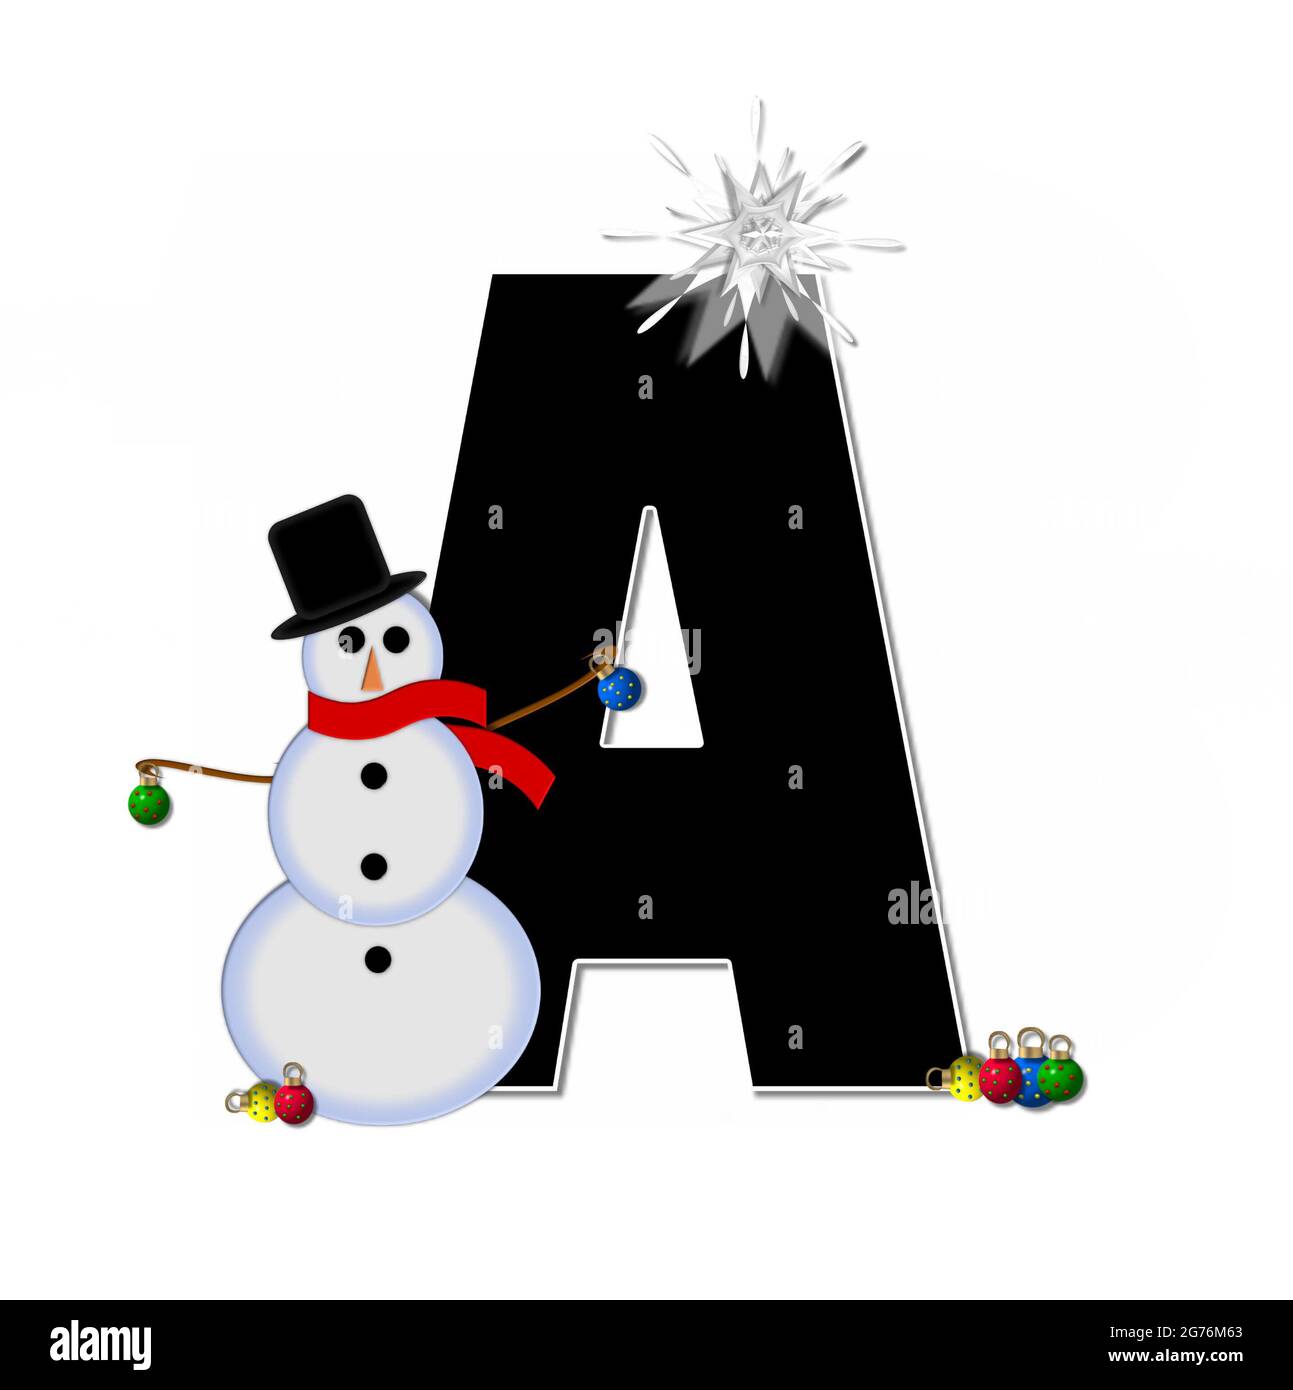 La letra A, en el conjunto del alfabeto 'Frosty', es negra y decorada con  un muñeco de nieve y adornos de Navidad. El muñeco de nieve lleva una  bufanda roja y una